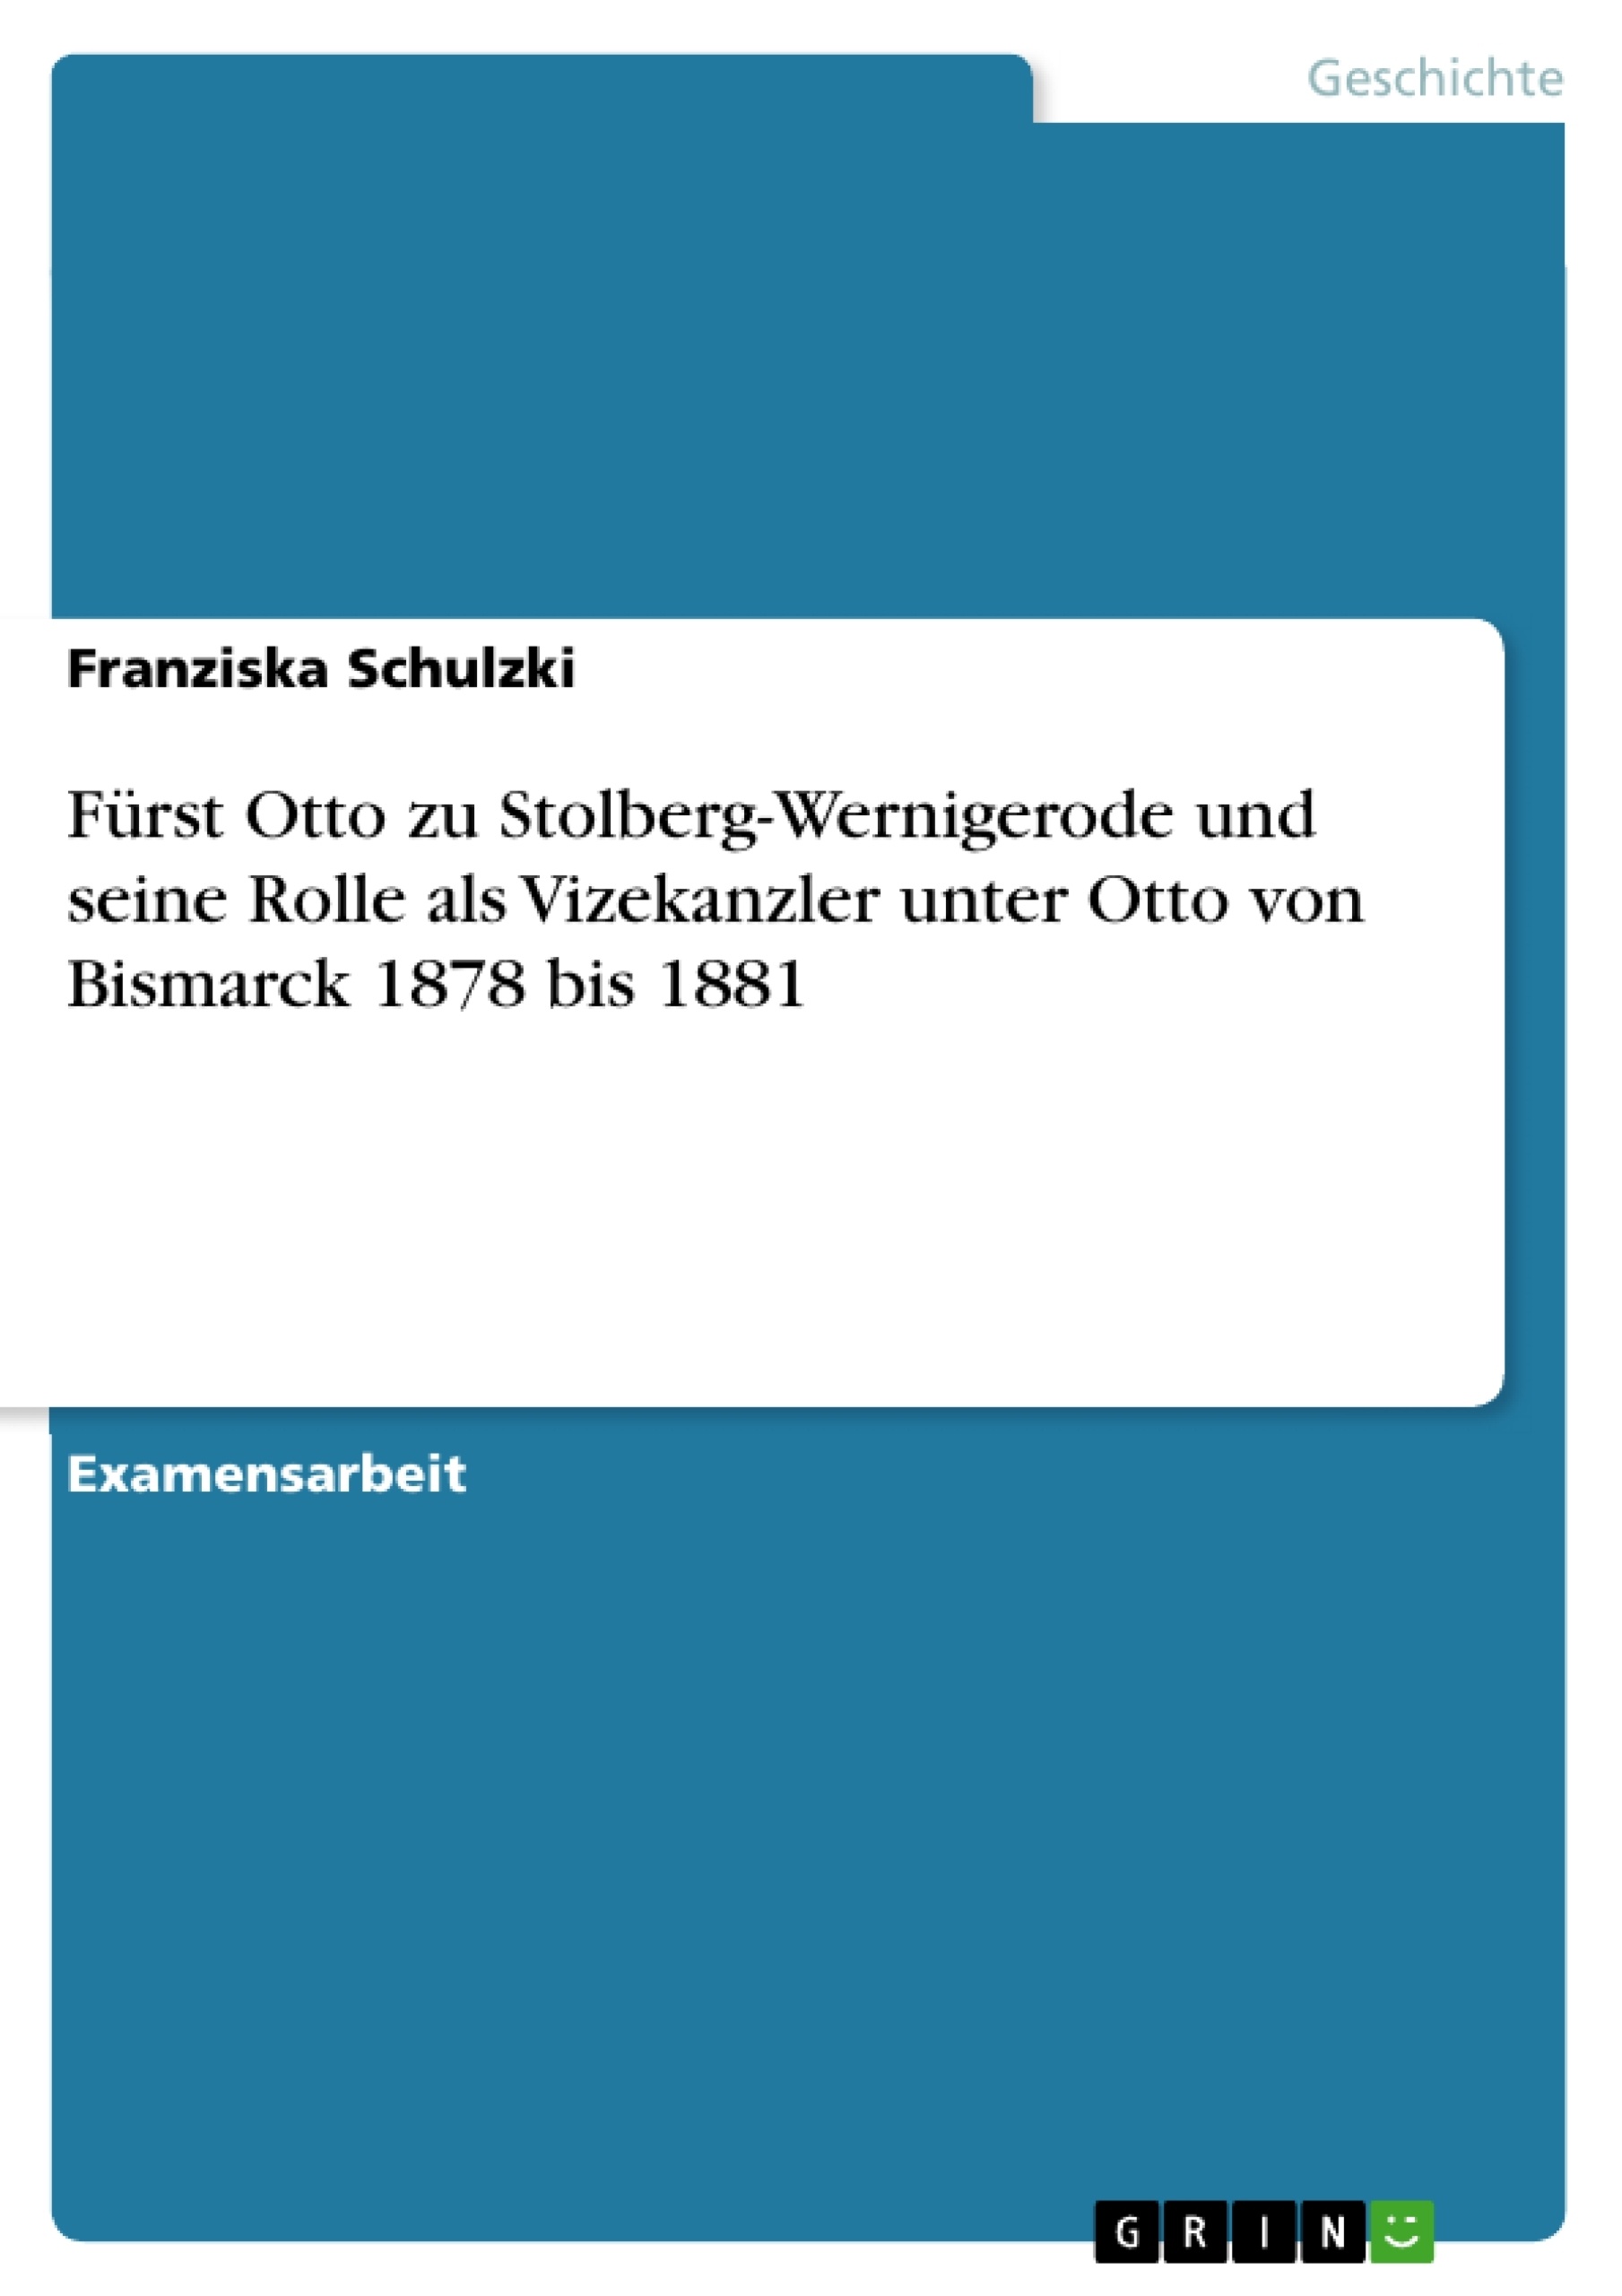 Title: Fürst Otto zu Stolberg-Wernigerode und seine Rolle als Vizekanzler unter Otto von Bismarck 1878 bis 1881